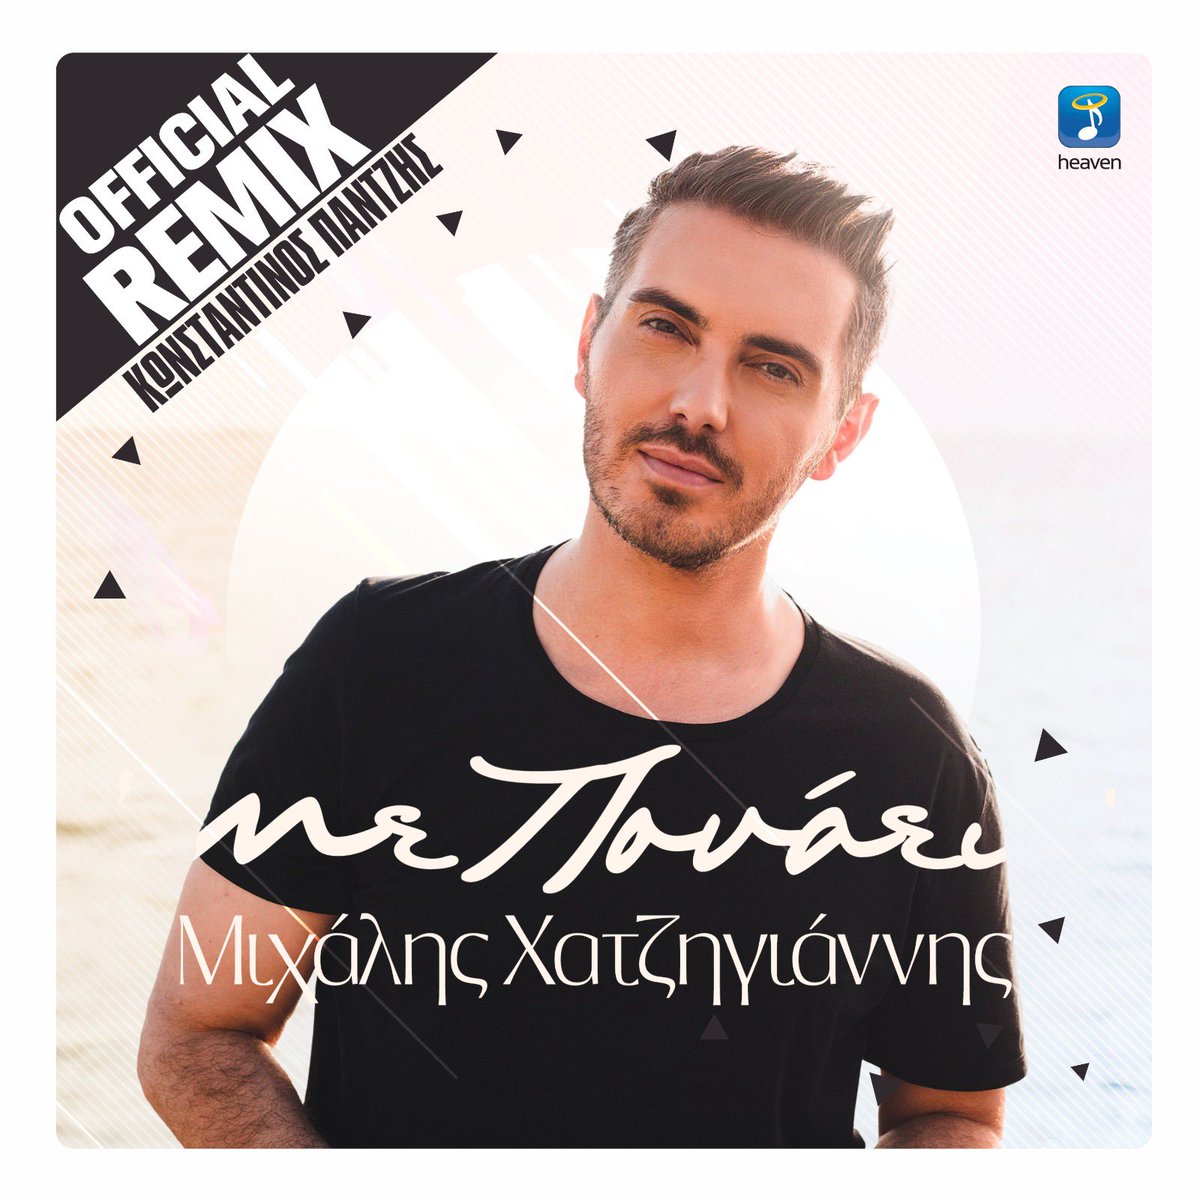 Ετοιμαστείτε να ακούσετε το 'Με Πονάει' αλλιώς! Το επίσημο remix από τον @kontaz77 κυκλοφορεί σε όλες τις ψηφιακές πλατφόρμες αύριο 🙌🏼🎶 @HeavenMusic_gr #greekmusic #greekremix #mihalis_hatzigiannis #konstantinospantzis #enjoy